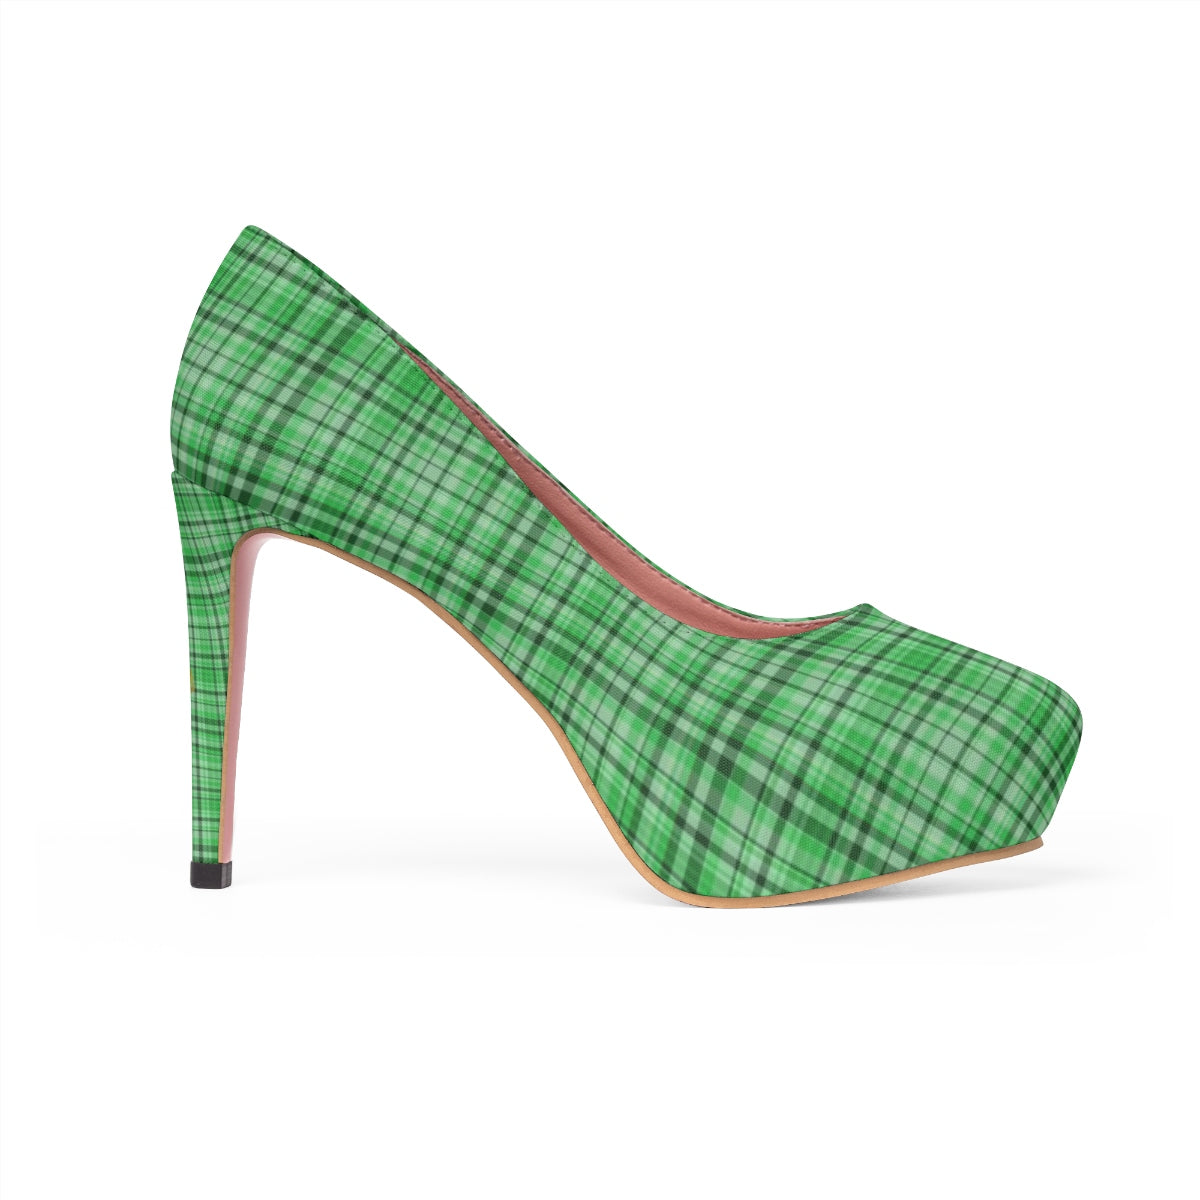 Green Plaid Scottish Tartan Print Women's Platform Heels Stiletto Pumps (US Size: 5-11)-4 inch Heels-US 7-Heidi Kimura Art LLC